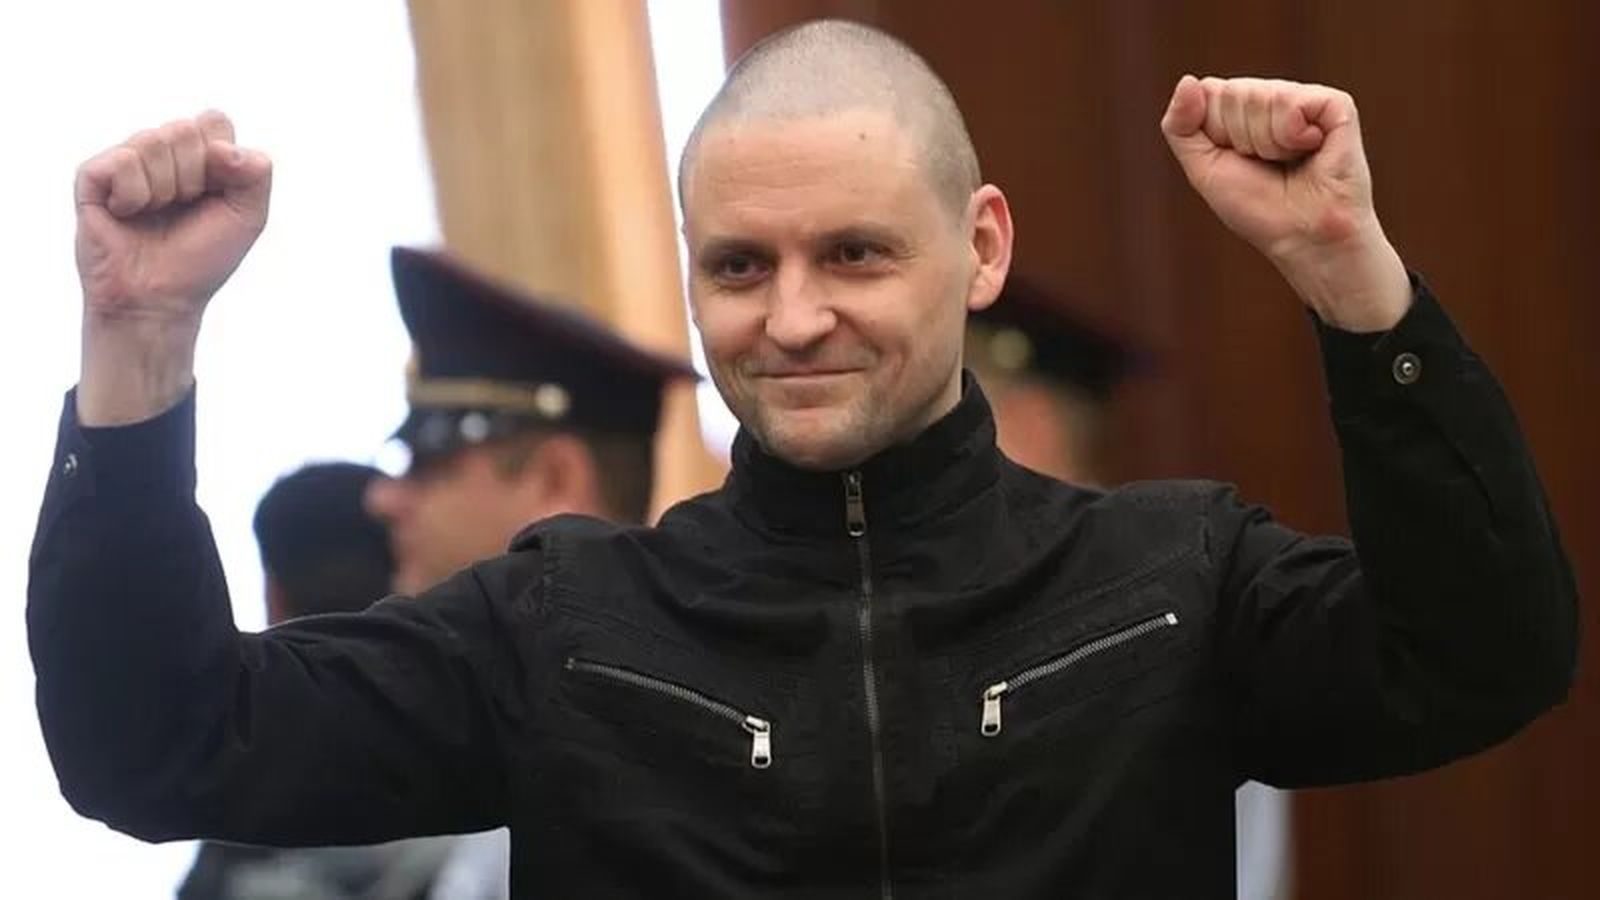 Сергей Удальцов в августе 2017 года выходит на свободу после 4,5 года тюрьмы за «организацию массовых беспорядков» на Болотной / ТАСС